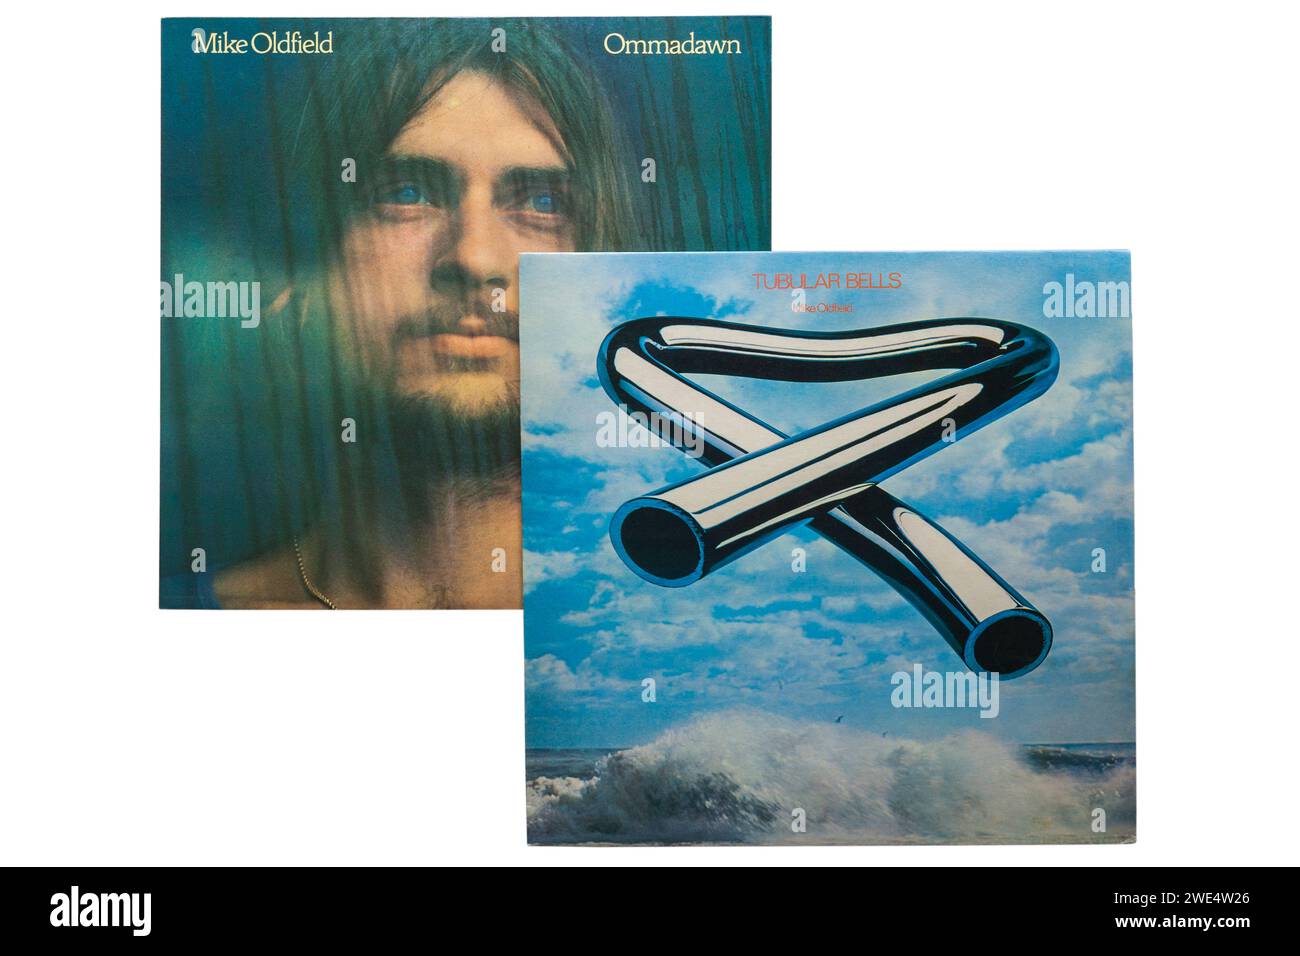 Mike Oldfield Tubular Bells 1973 album in vinile copertina LP e Ommadawn album in vinile copertina LP 1975 isolato su sfondo bianco Foto Stock